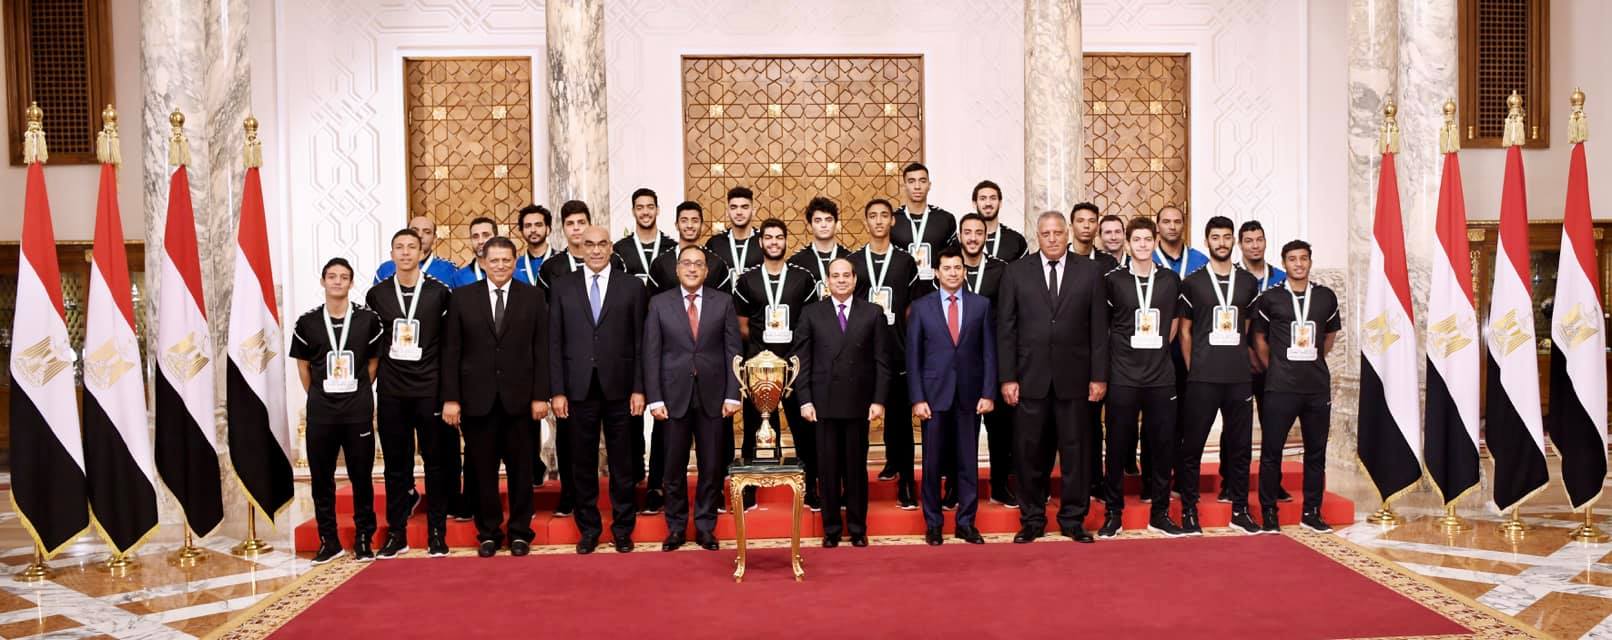   الرئيس السيسى يمنح وسام الرياضة من الطبقة الأولى لمنتخب كرة اليد للناشئين (صور)